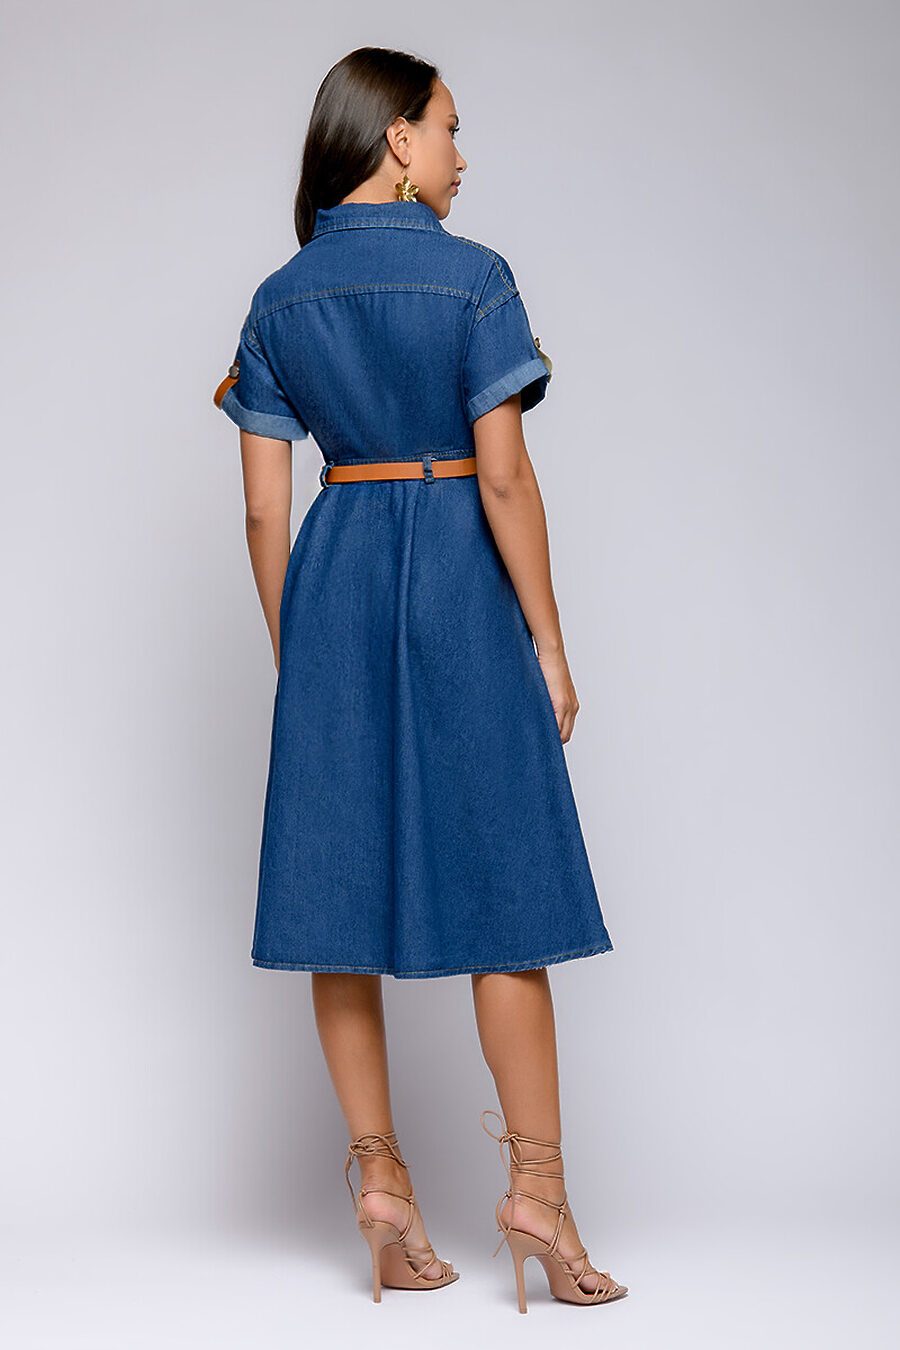 Платье для женщин 1001 DRESS 776038 купить оптом от производителя. Совместная покупка женской одежды в OptMoyo